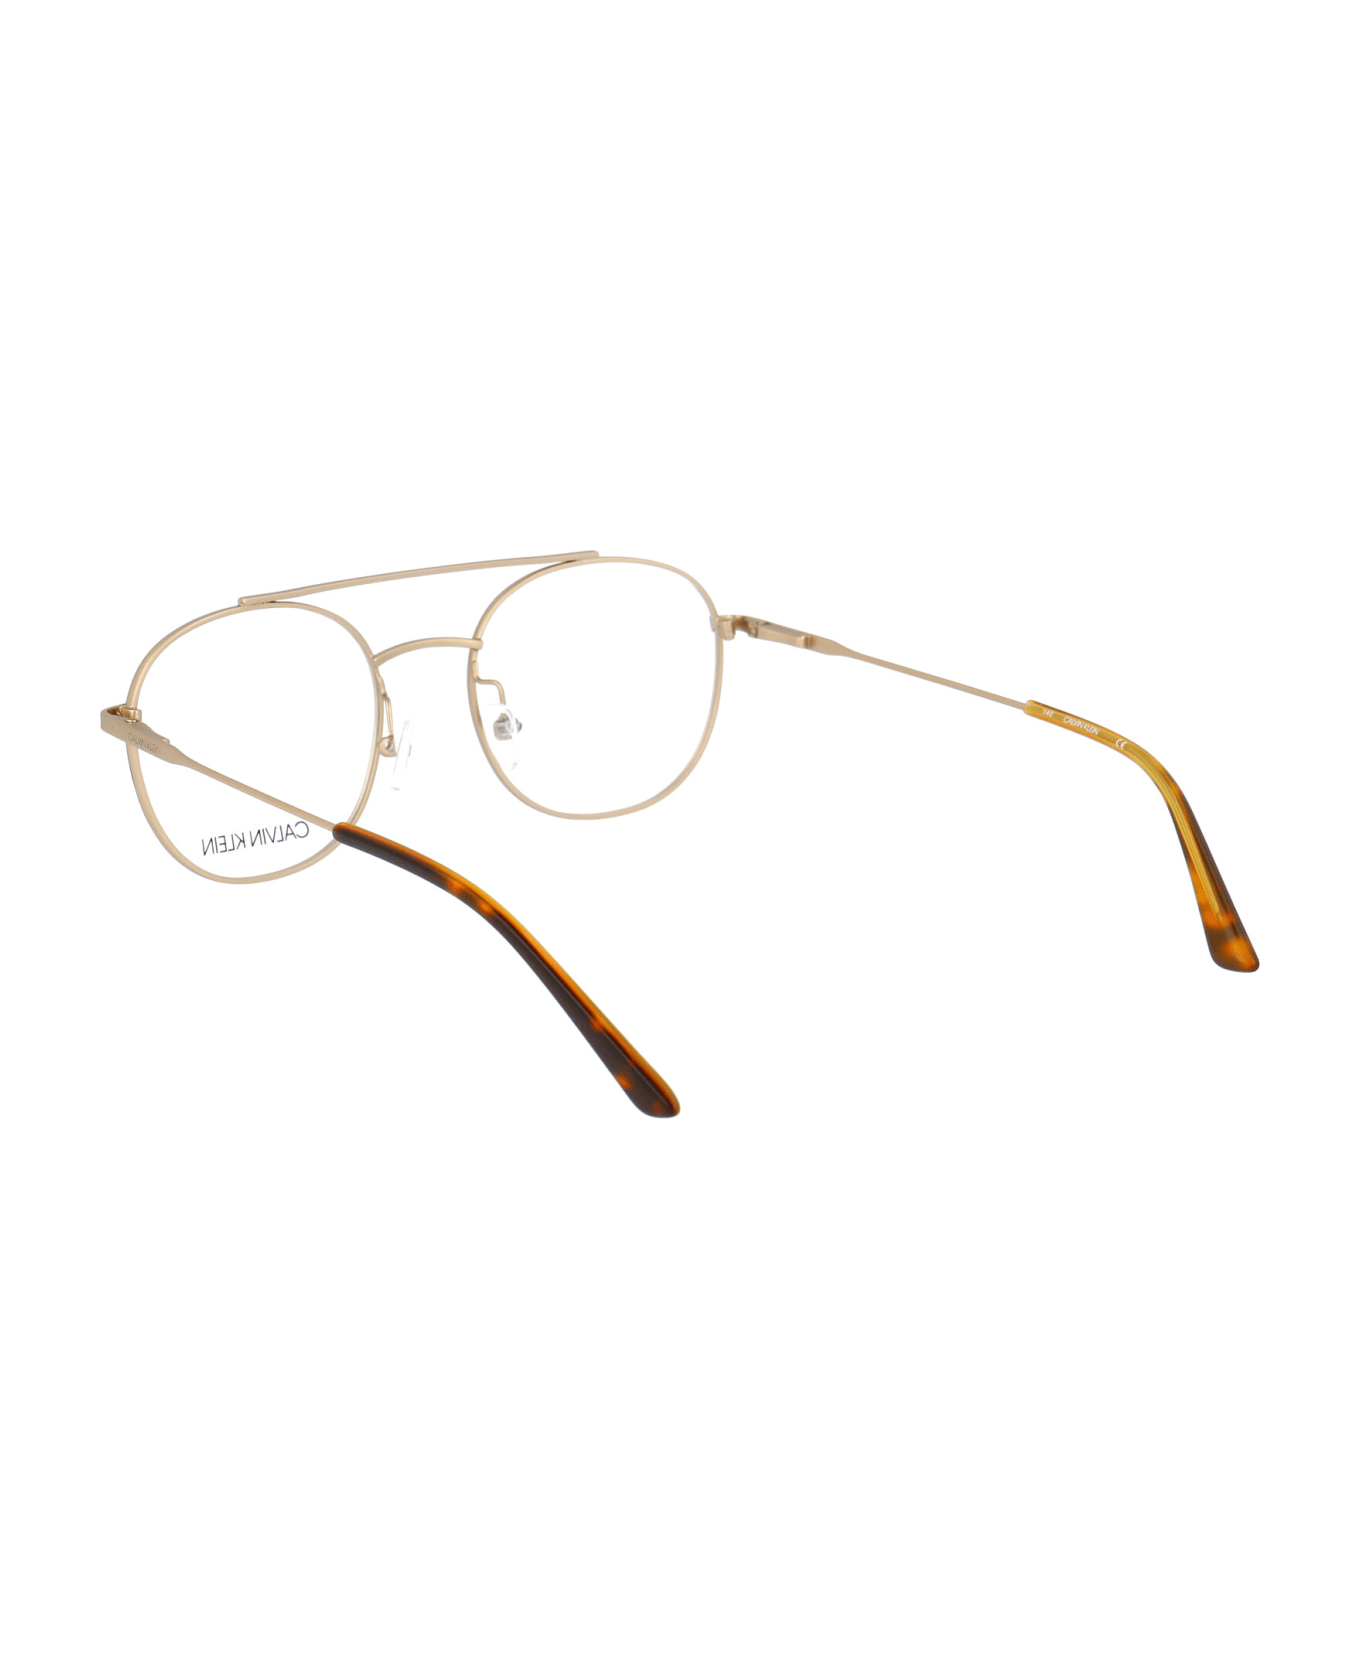 Calvin Klein Ck18123 Glasses - 200 GOLD アイウェア